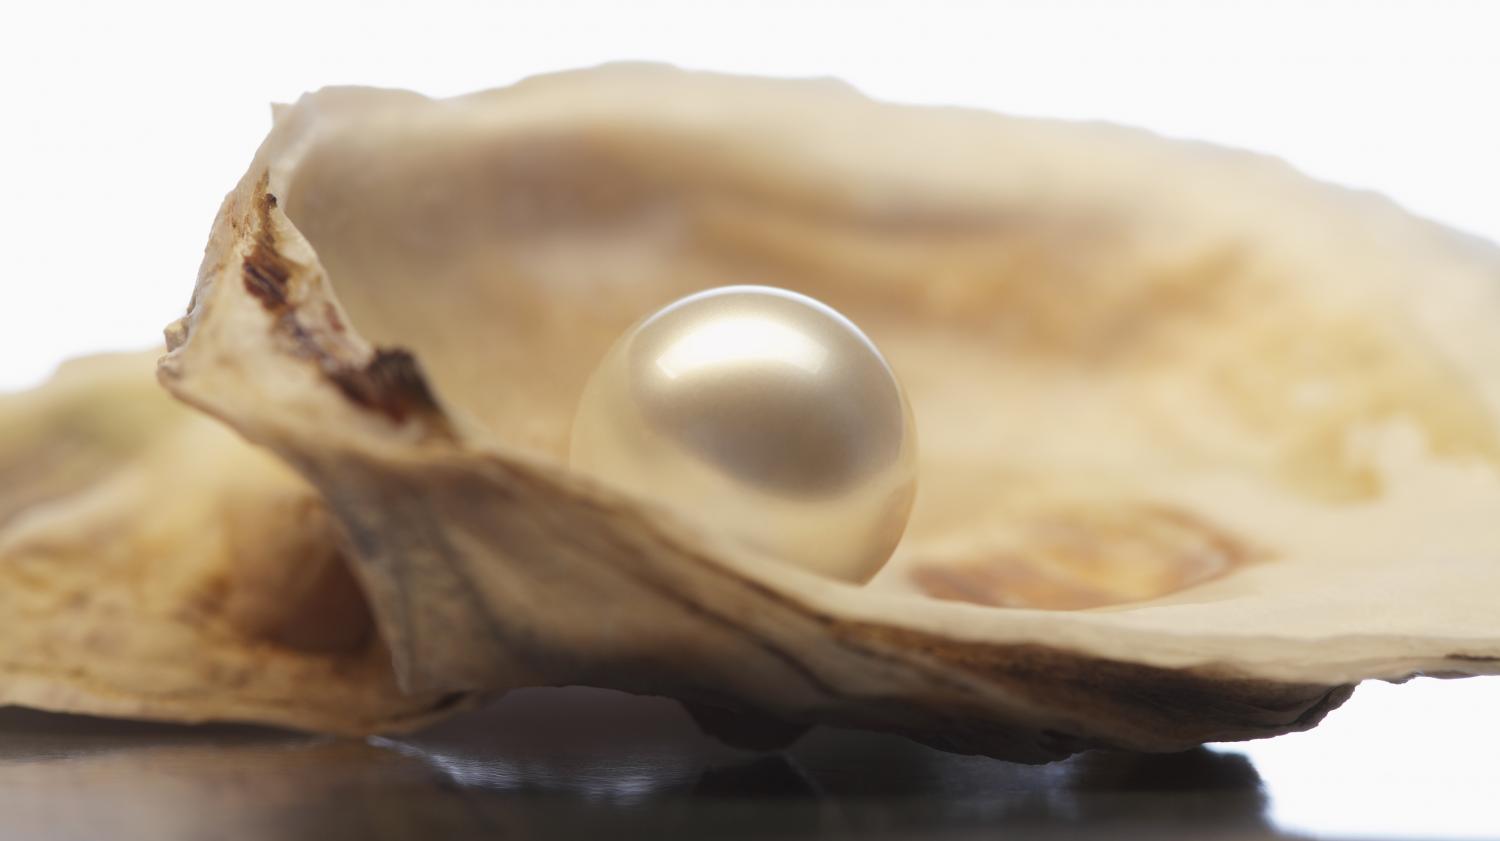 Au marché de Saint-Jory, une habituée a trouvé deux perles dans les huîtres